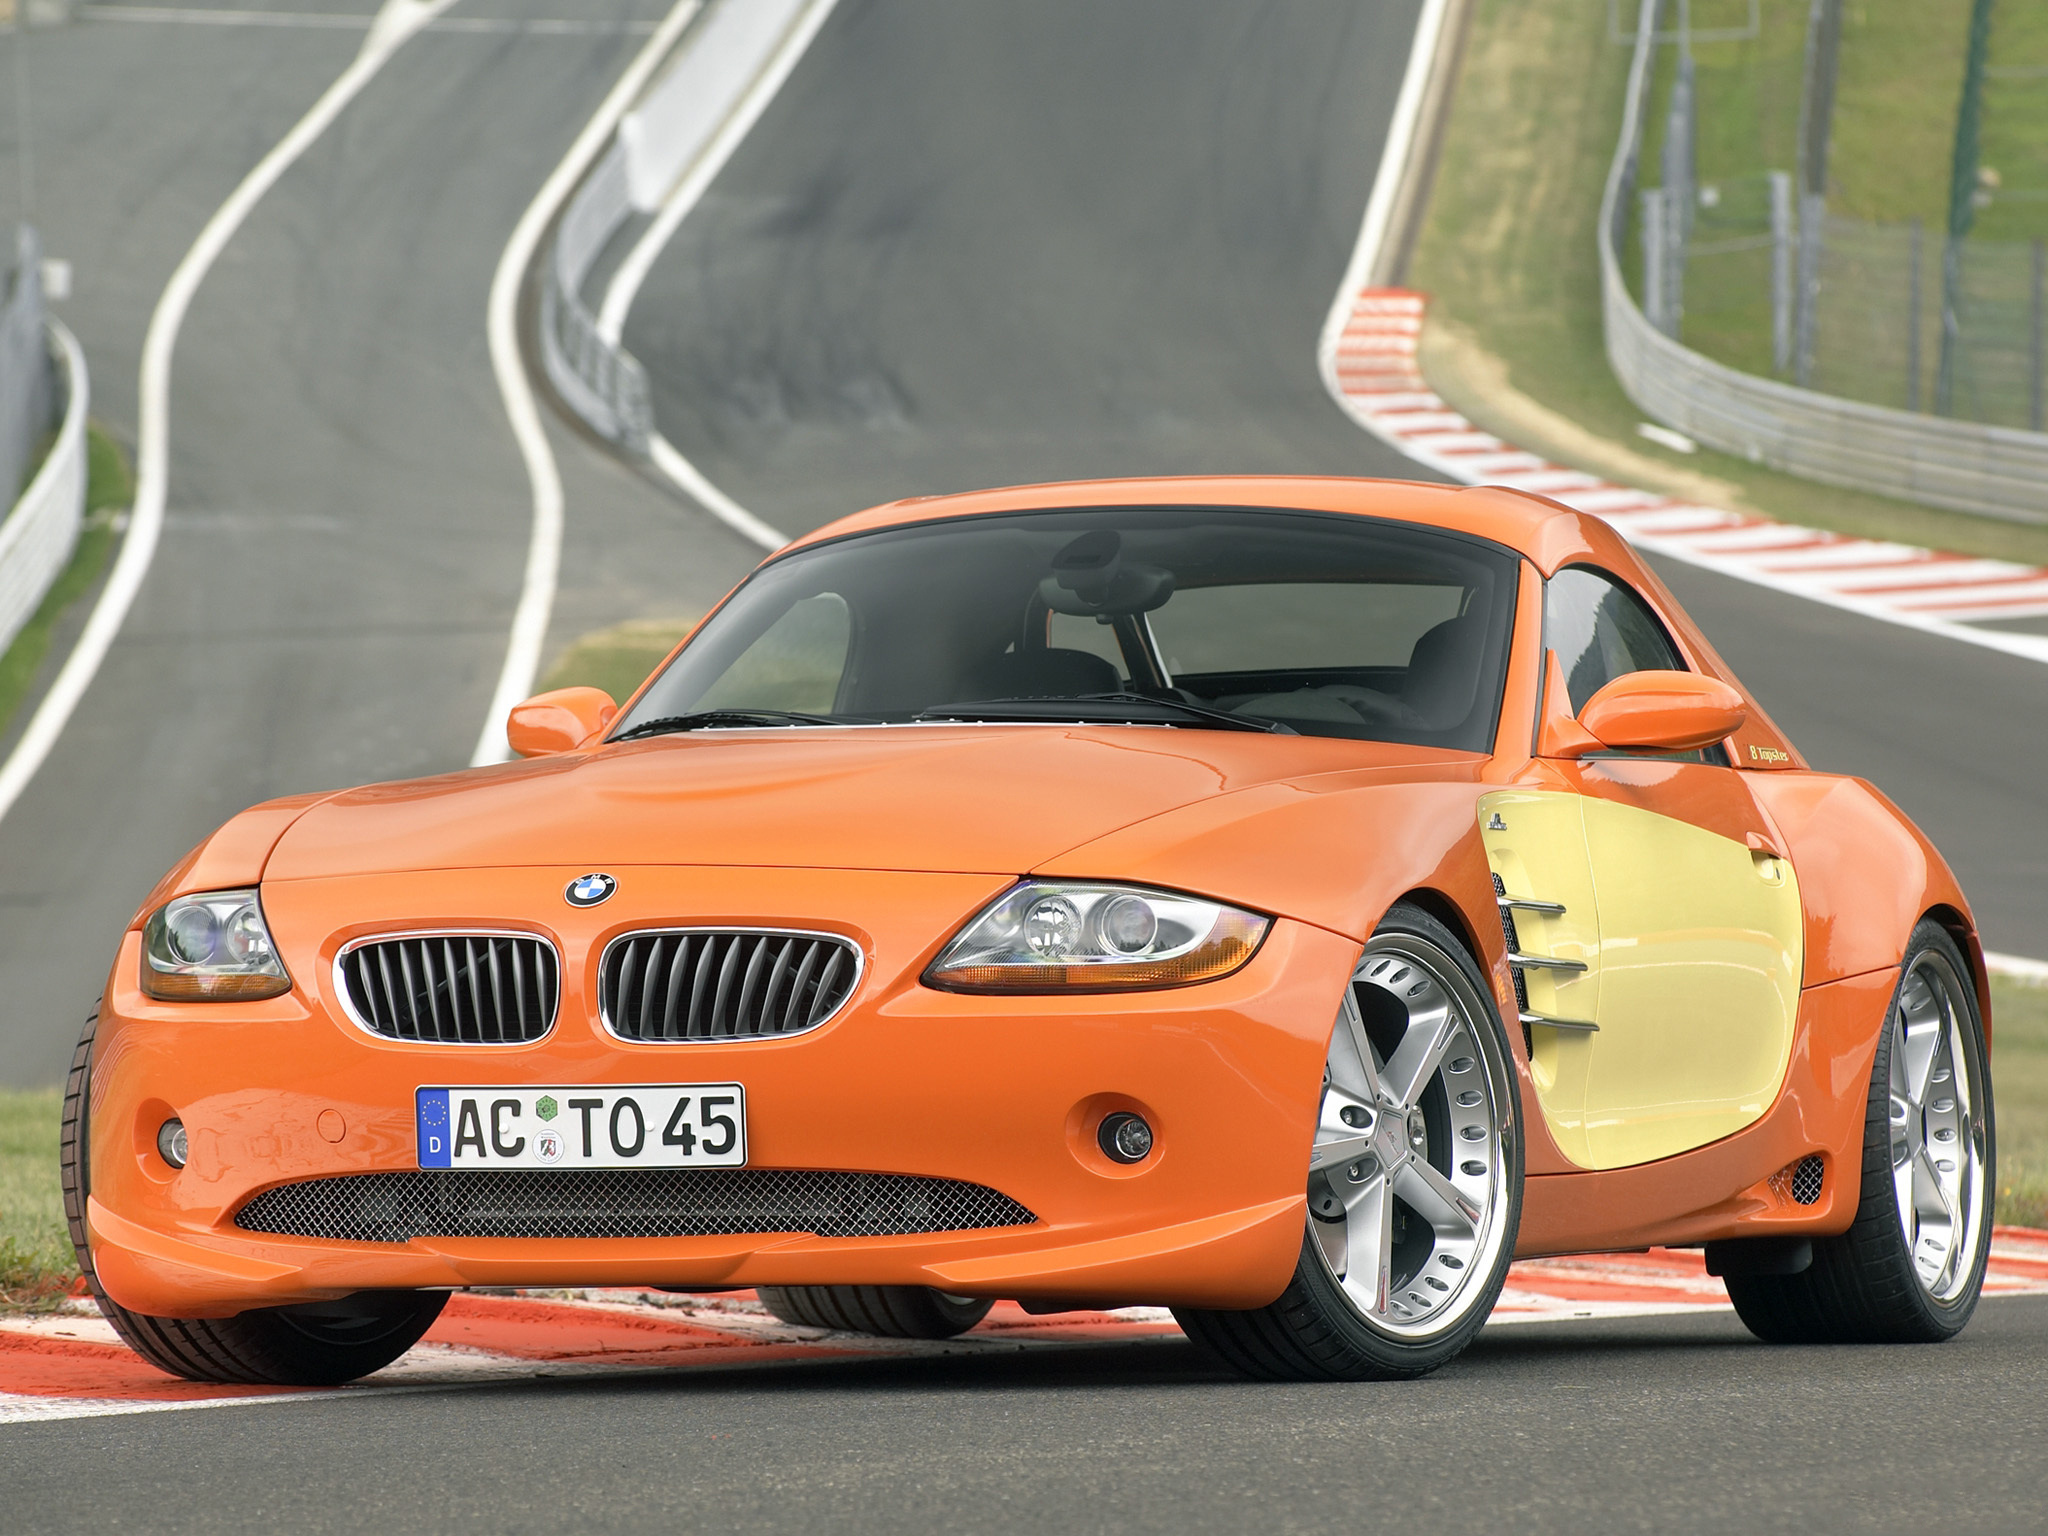 Сайт видео машина. BMW z4 оранжевая. BMW z4 2003. Шницер БМВ. BMW z3 оранжевый.